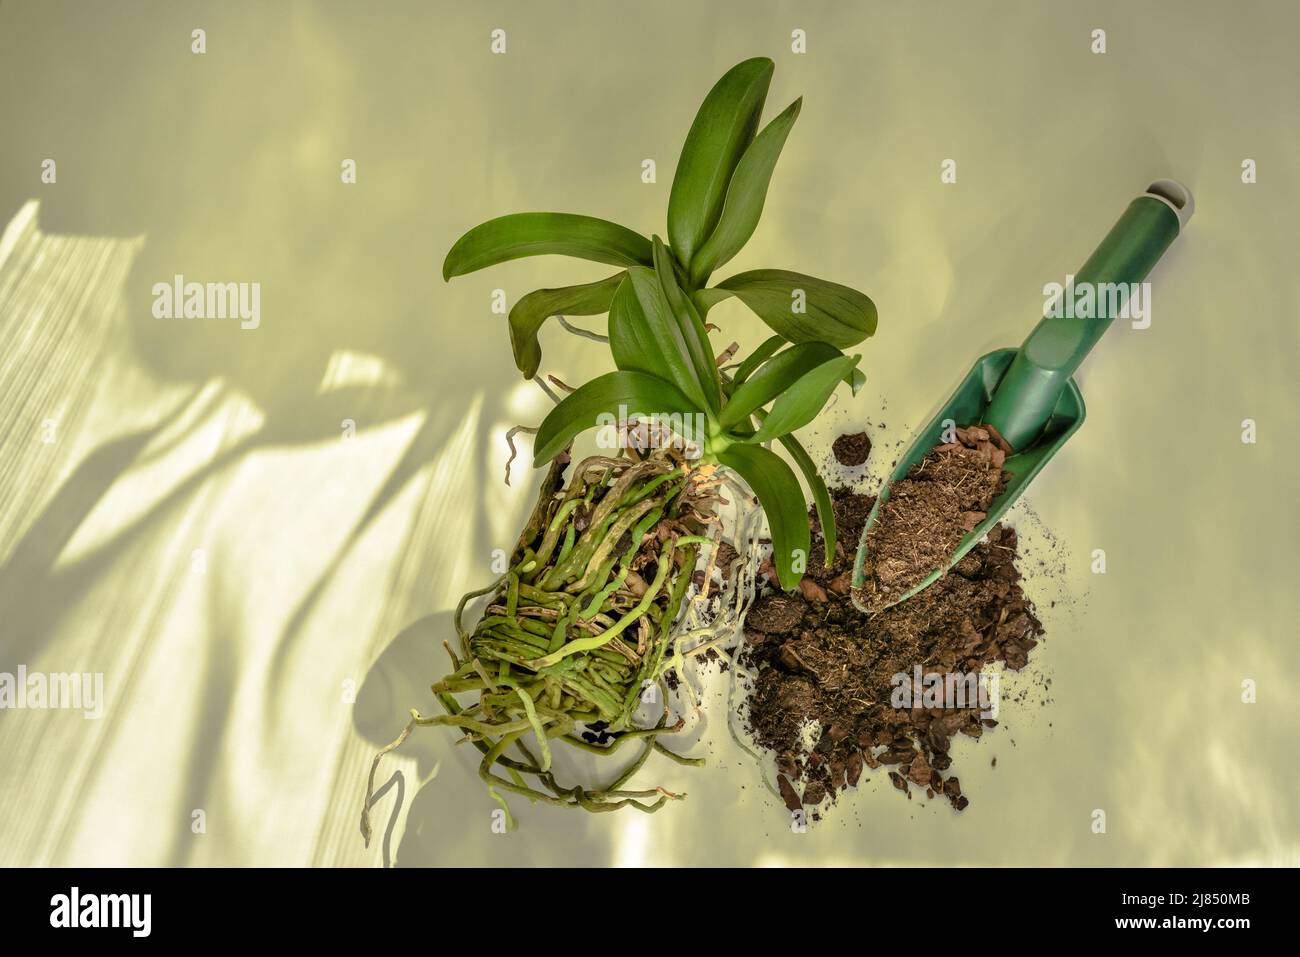 La fleur d'orchidée et son système racinaire en préparation à la plantation dans un nouveau sol. Soin et culture d'orchidées Phalaenopsis. Banque D'Images